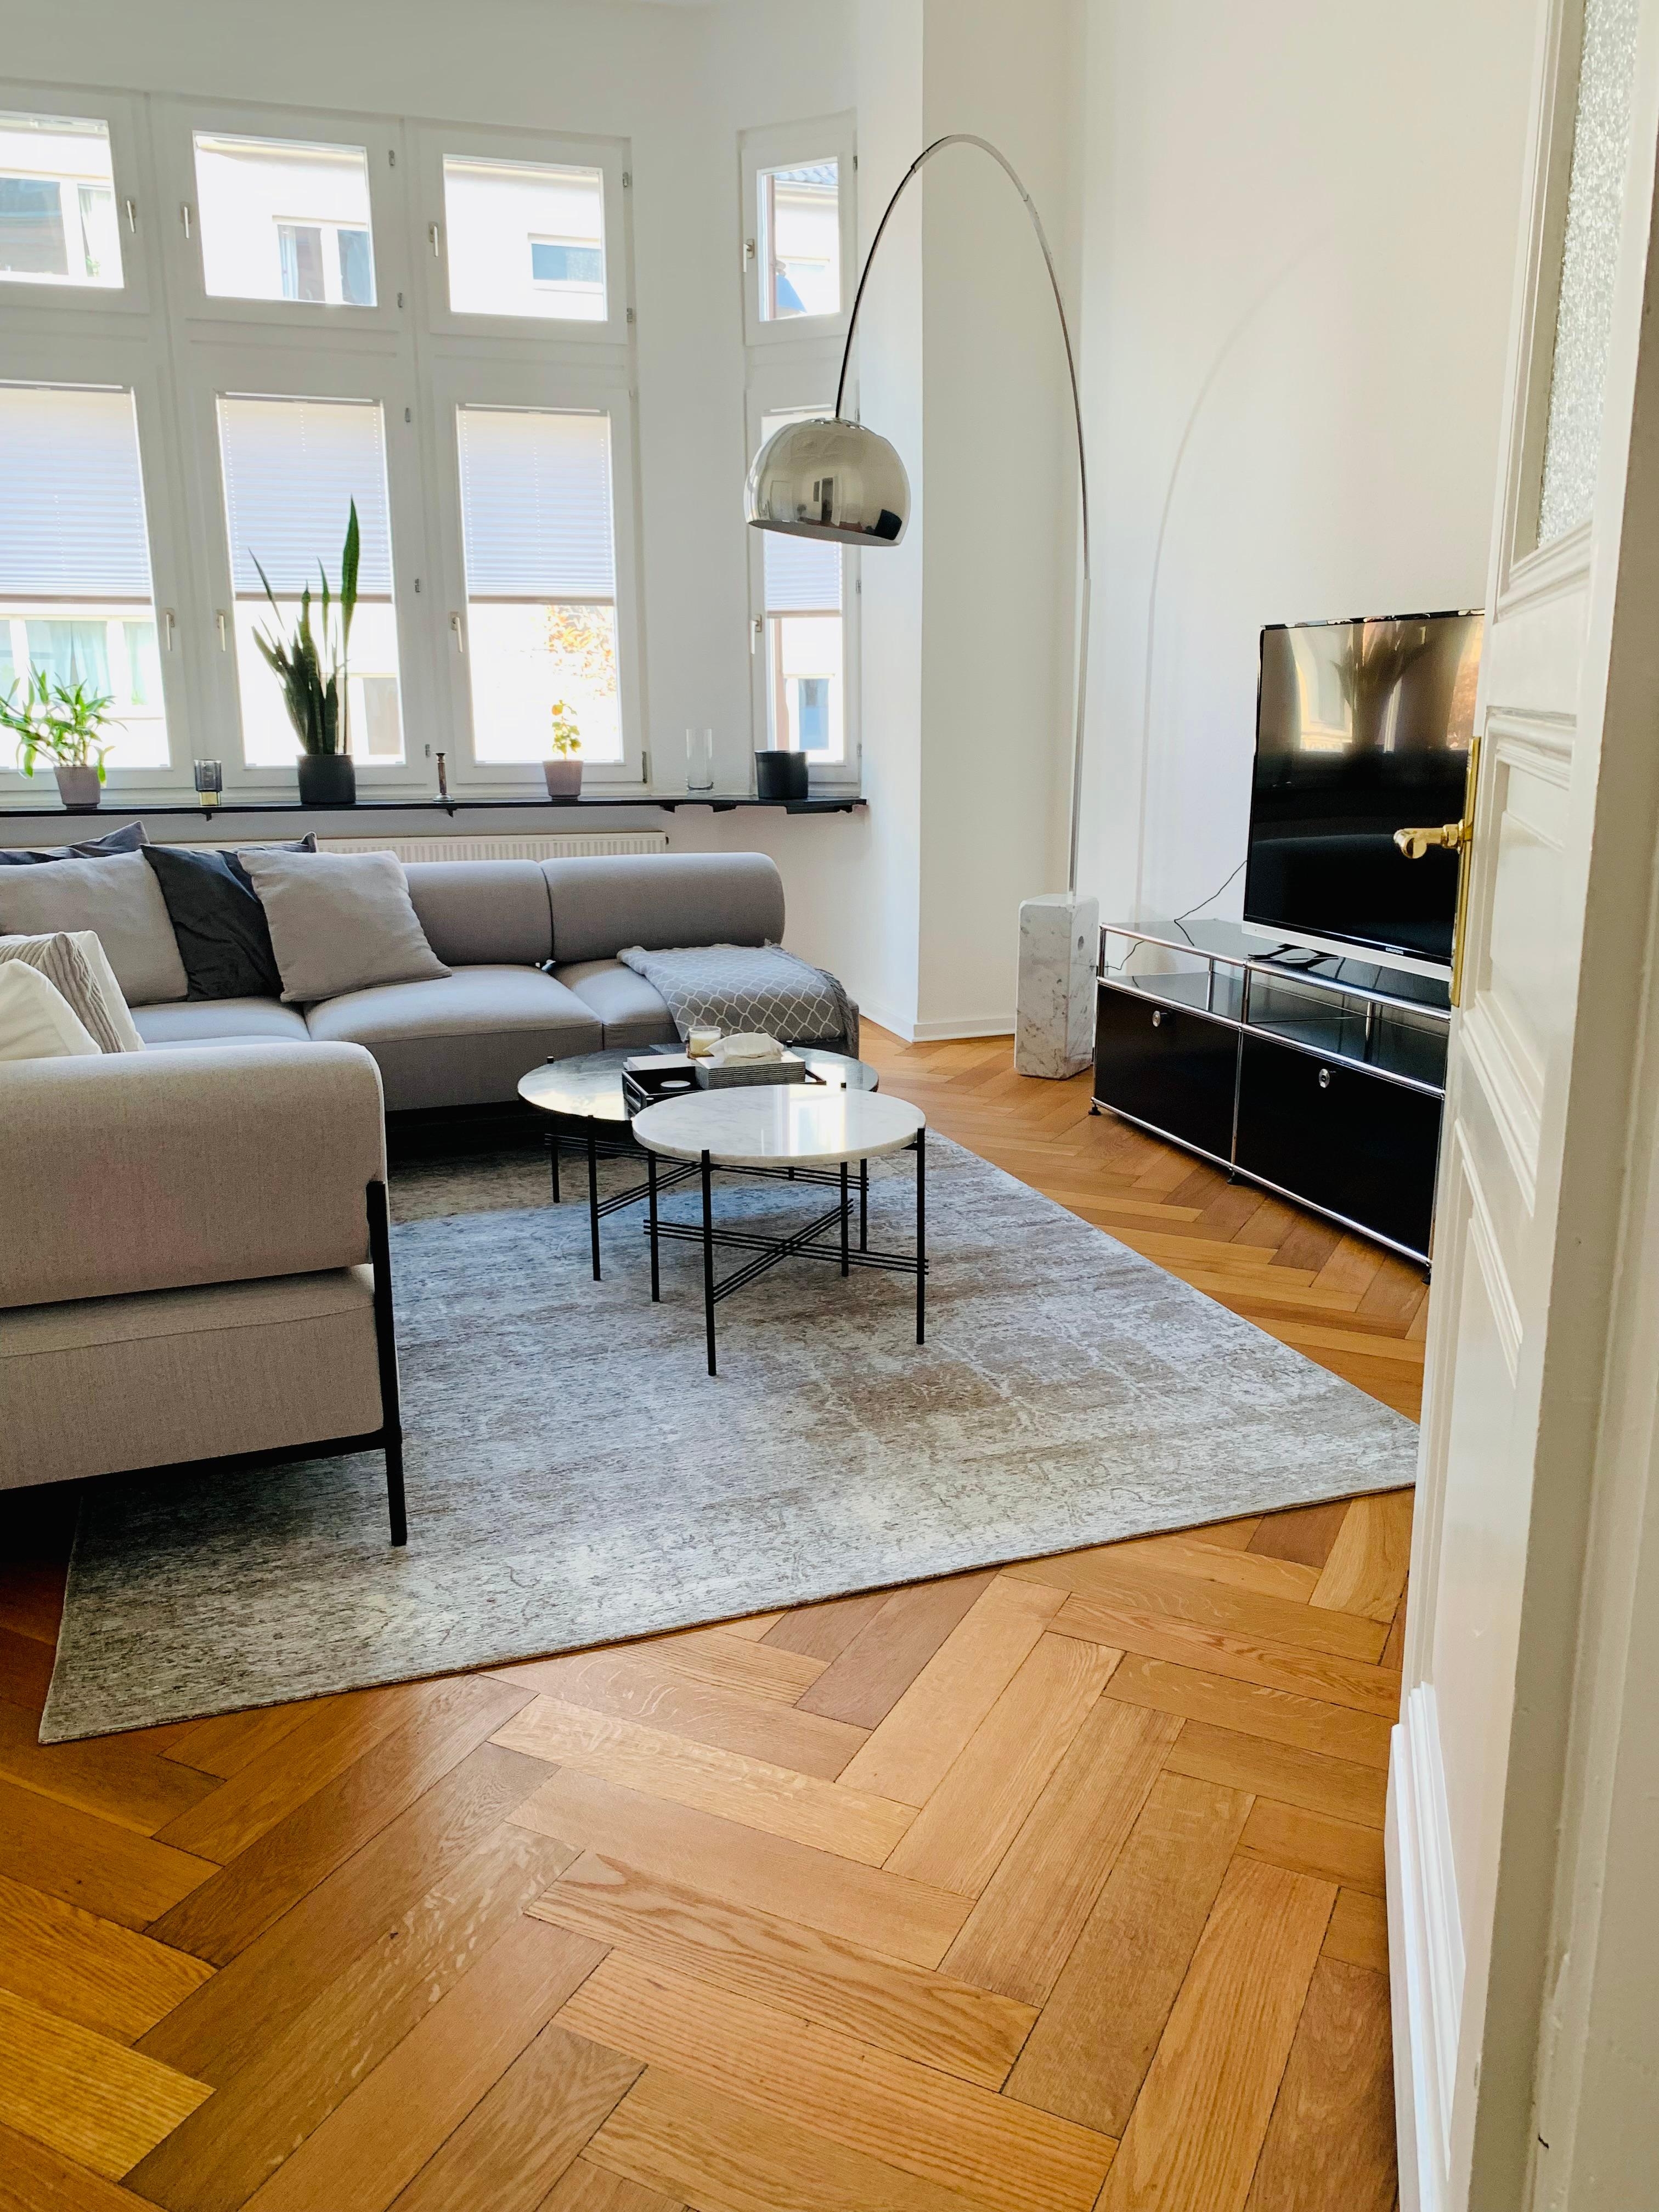 Blick ins Wohnzimmer 🤍🖤
#neuhier #altbauliebe #noahsofa #minimalisticinterior #einrichtungsberatung #interiorservices #altbaucharme #altbaurenovierung